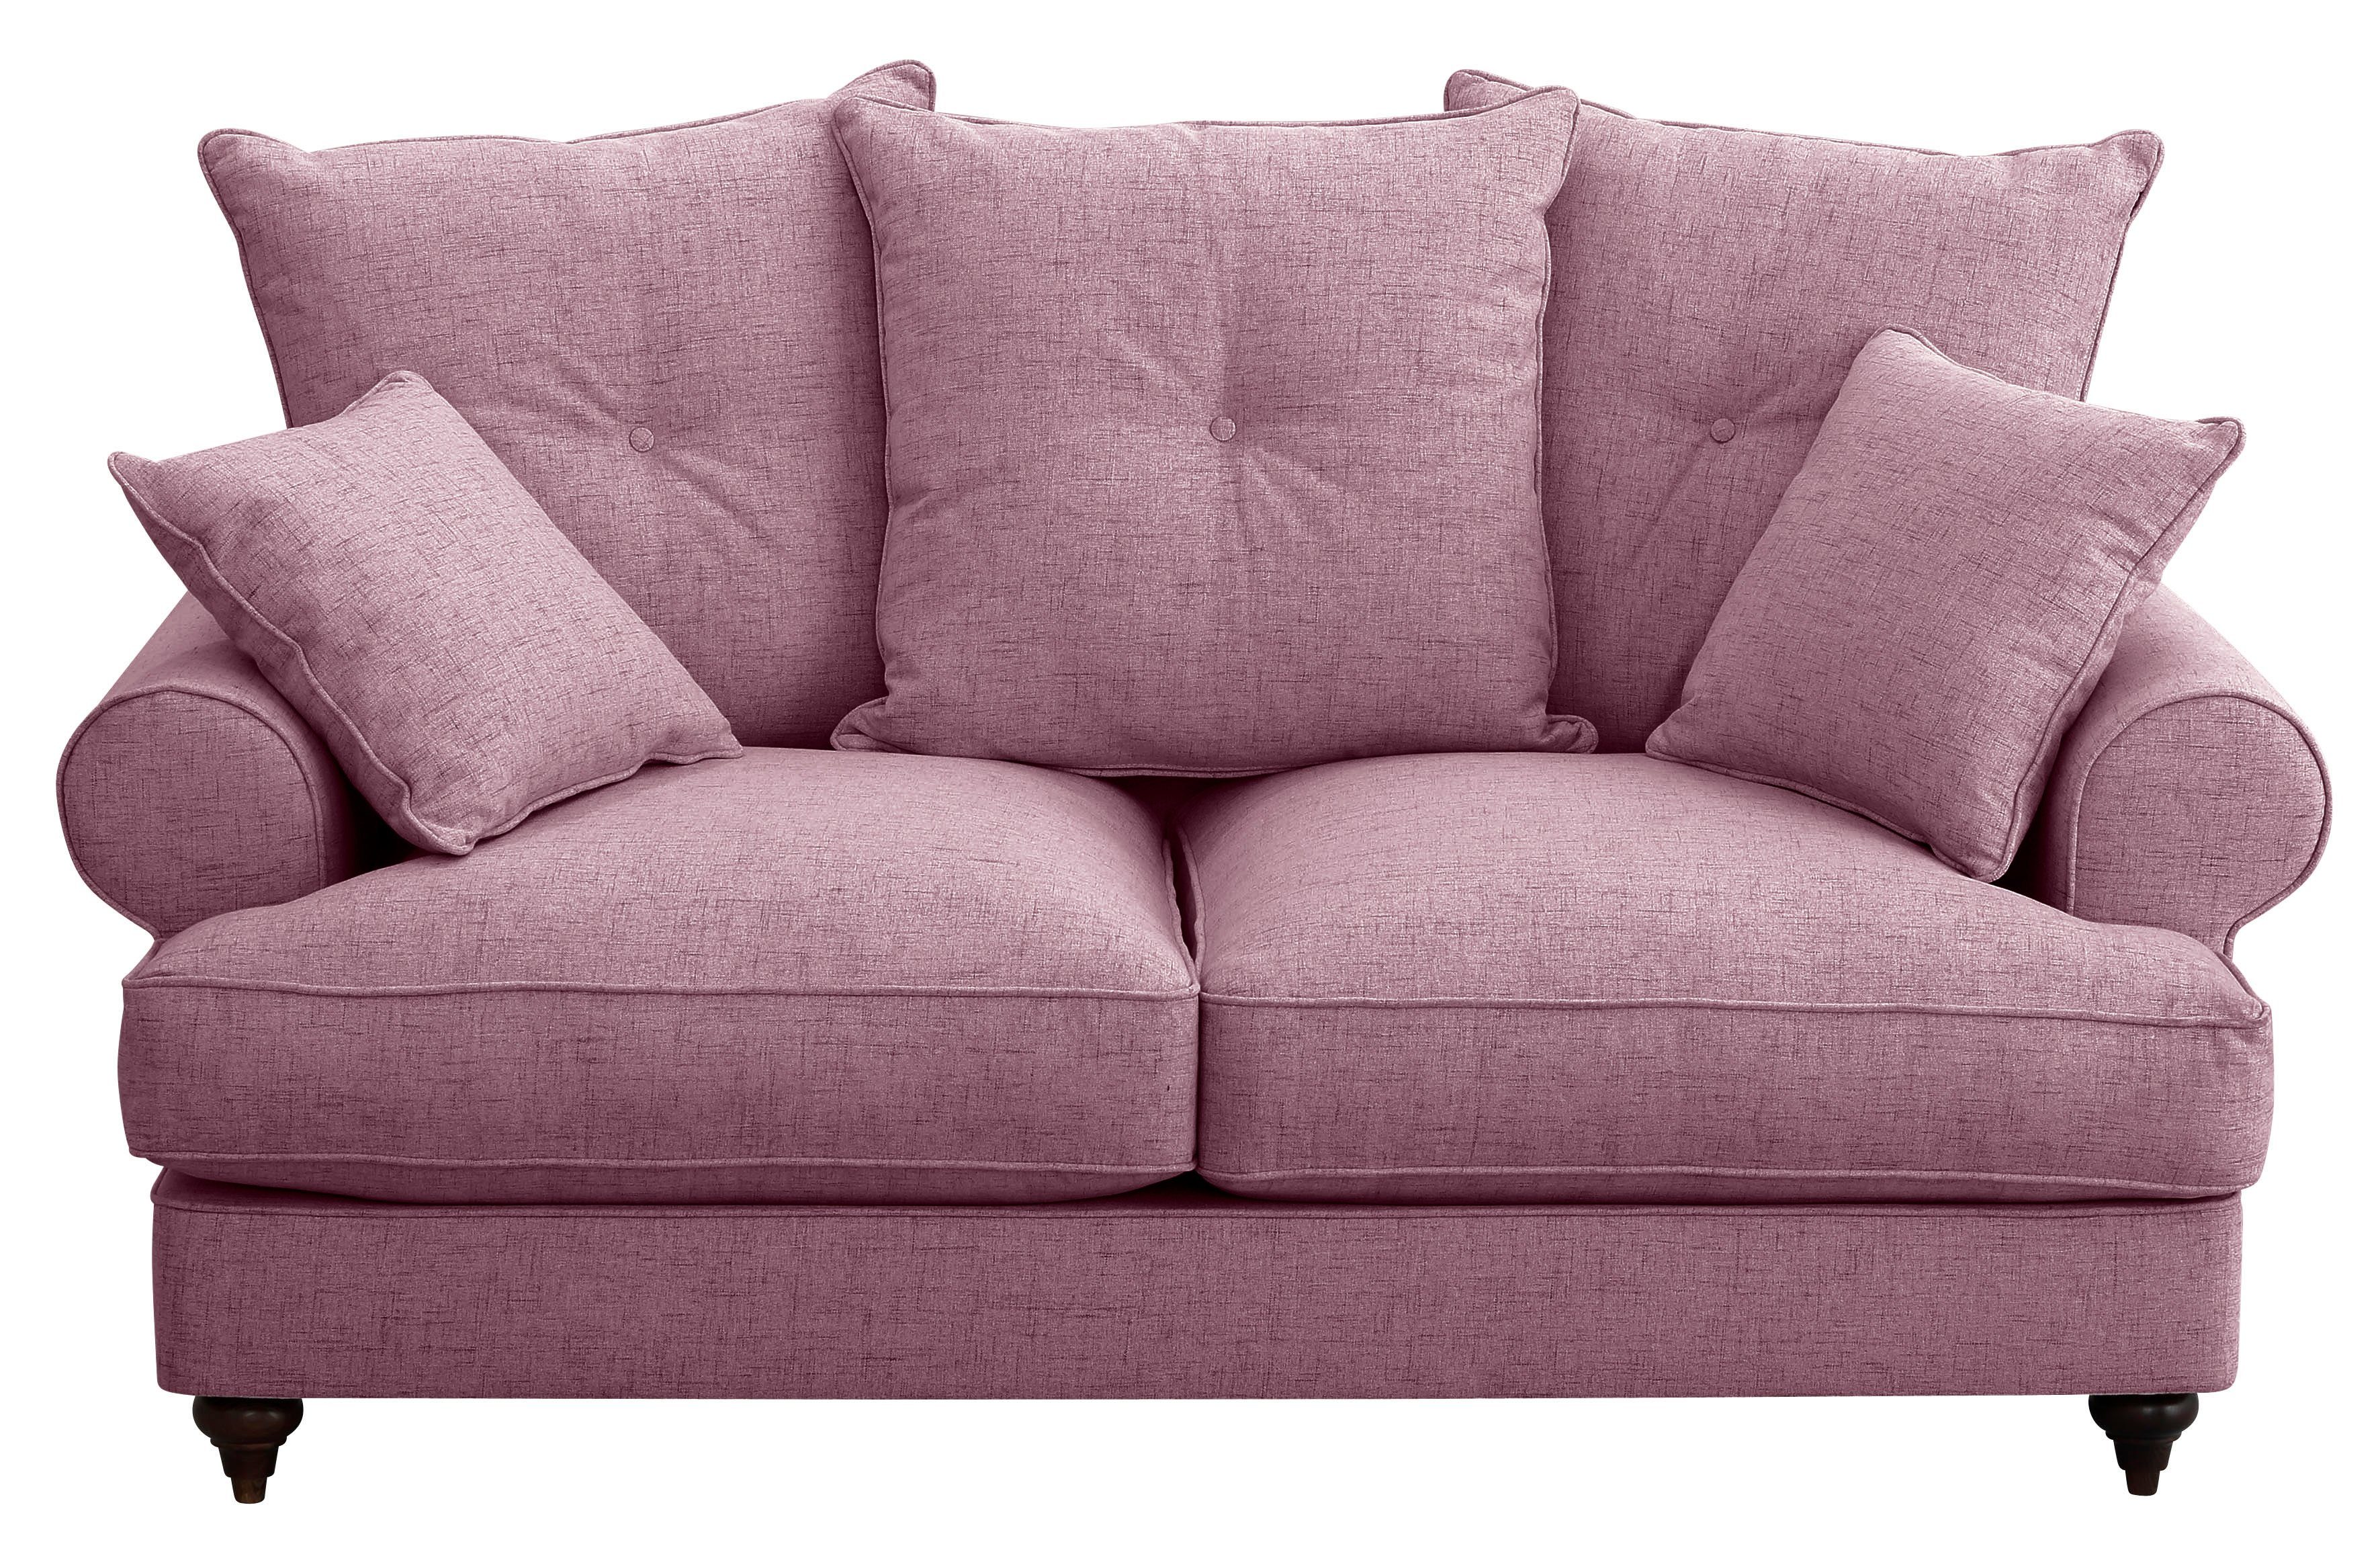 Home affaire 2-Sitzer Bloomer, mit hochwertigem Kaltschaum, in verschiedenen Farben erhältlich violet | Einzelsofas